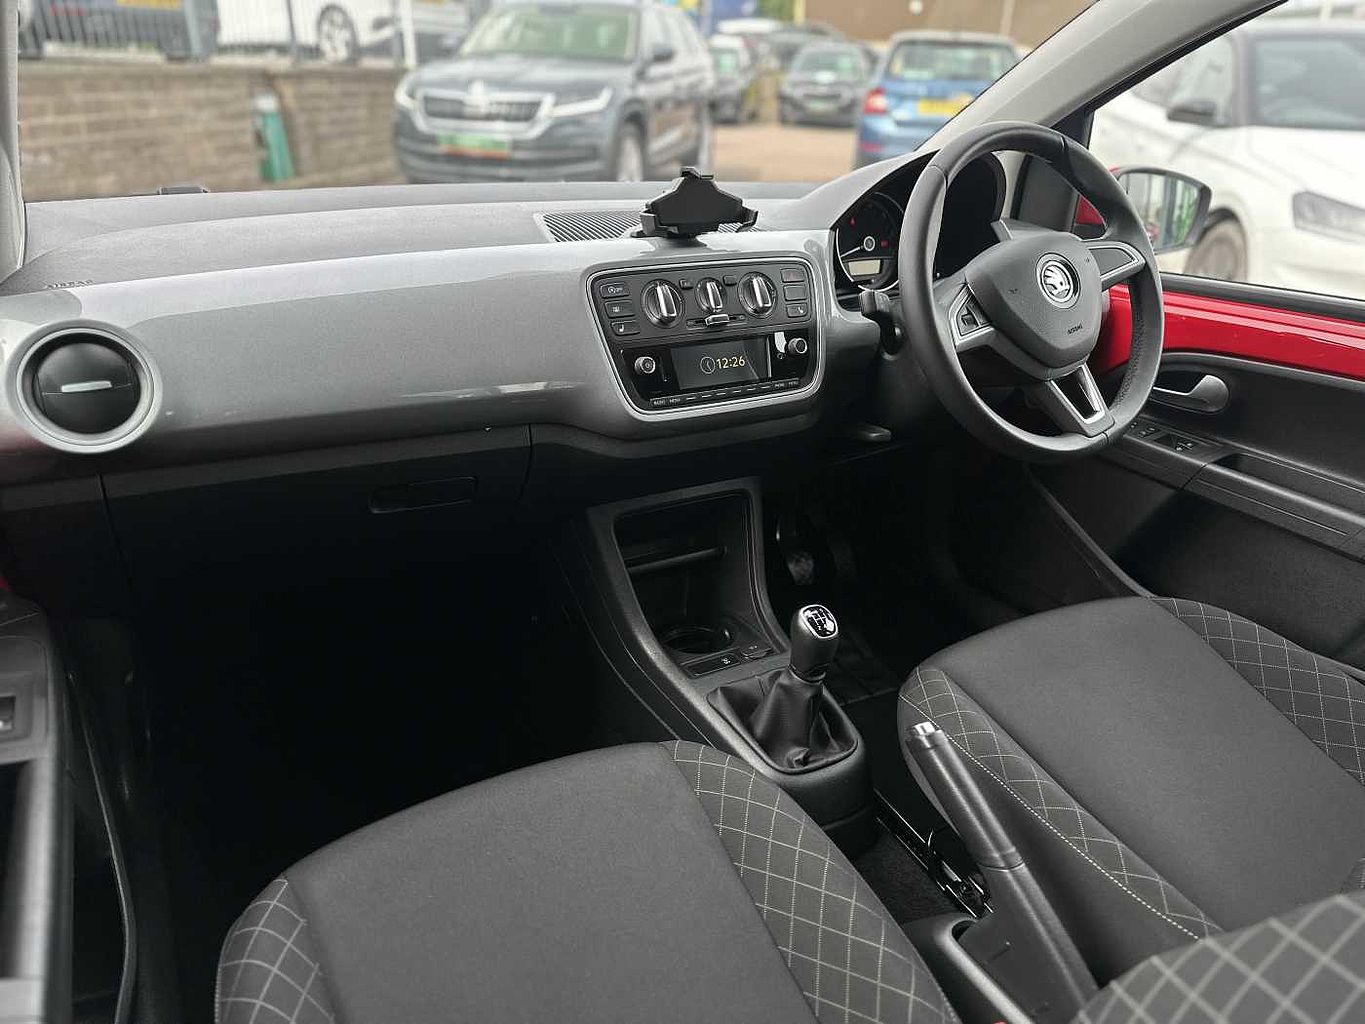 SKODA Citigo 1.0 MPI (75PS) SE L GreenTech Hatchback 5Dr